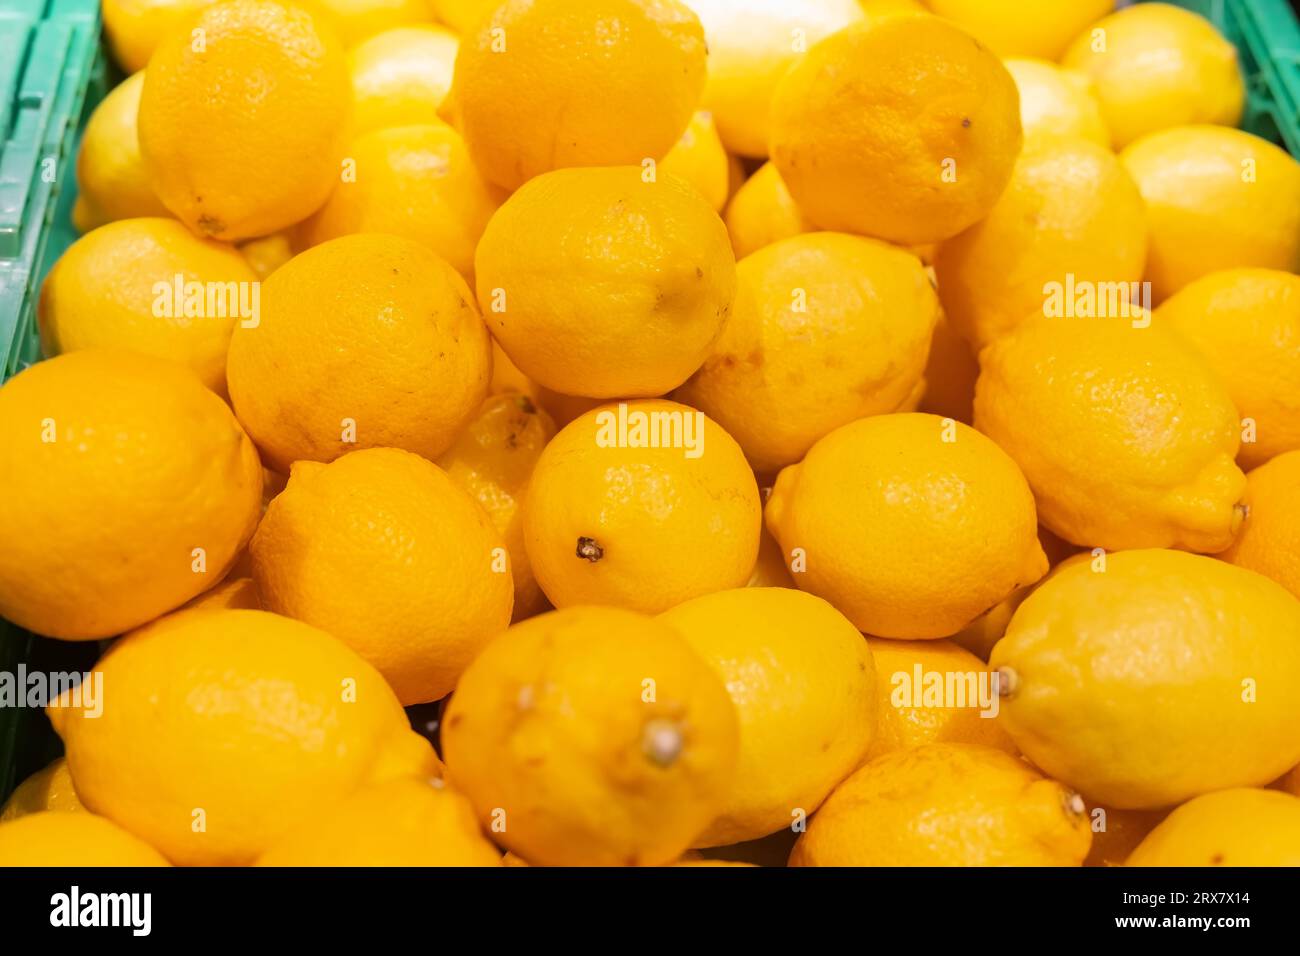 Limoni freschi, limoni gialli, frutta fresca in un supermercato. Foto Stock